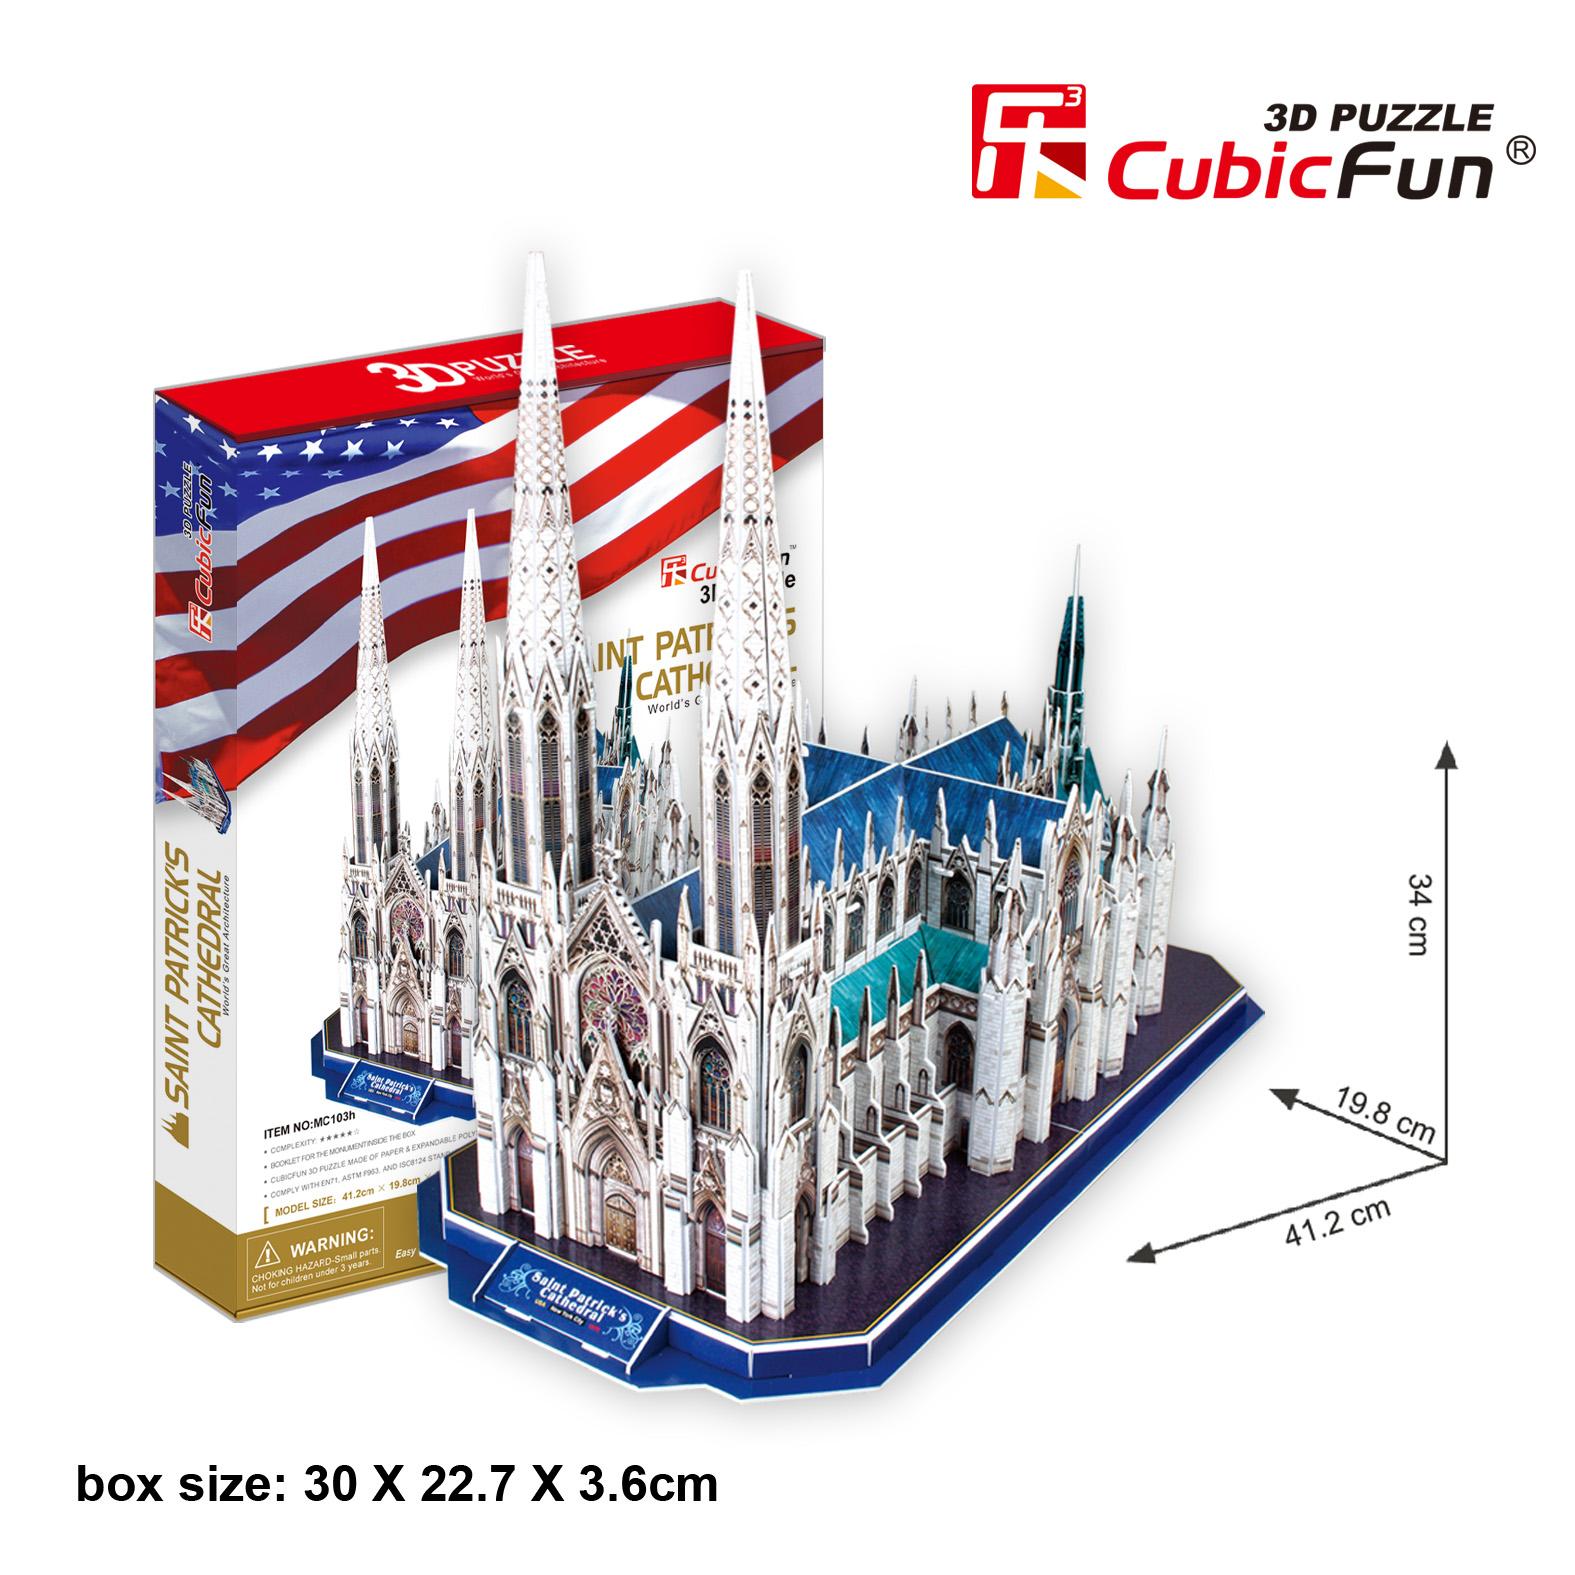 Mô Hình Giấy Cubic Fun Nhà thờ Matthias MC128h  Giá 383000đ tại Tikivn